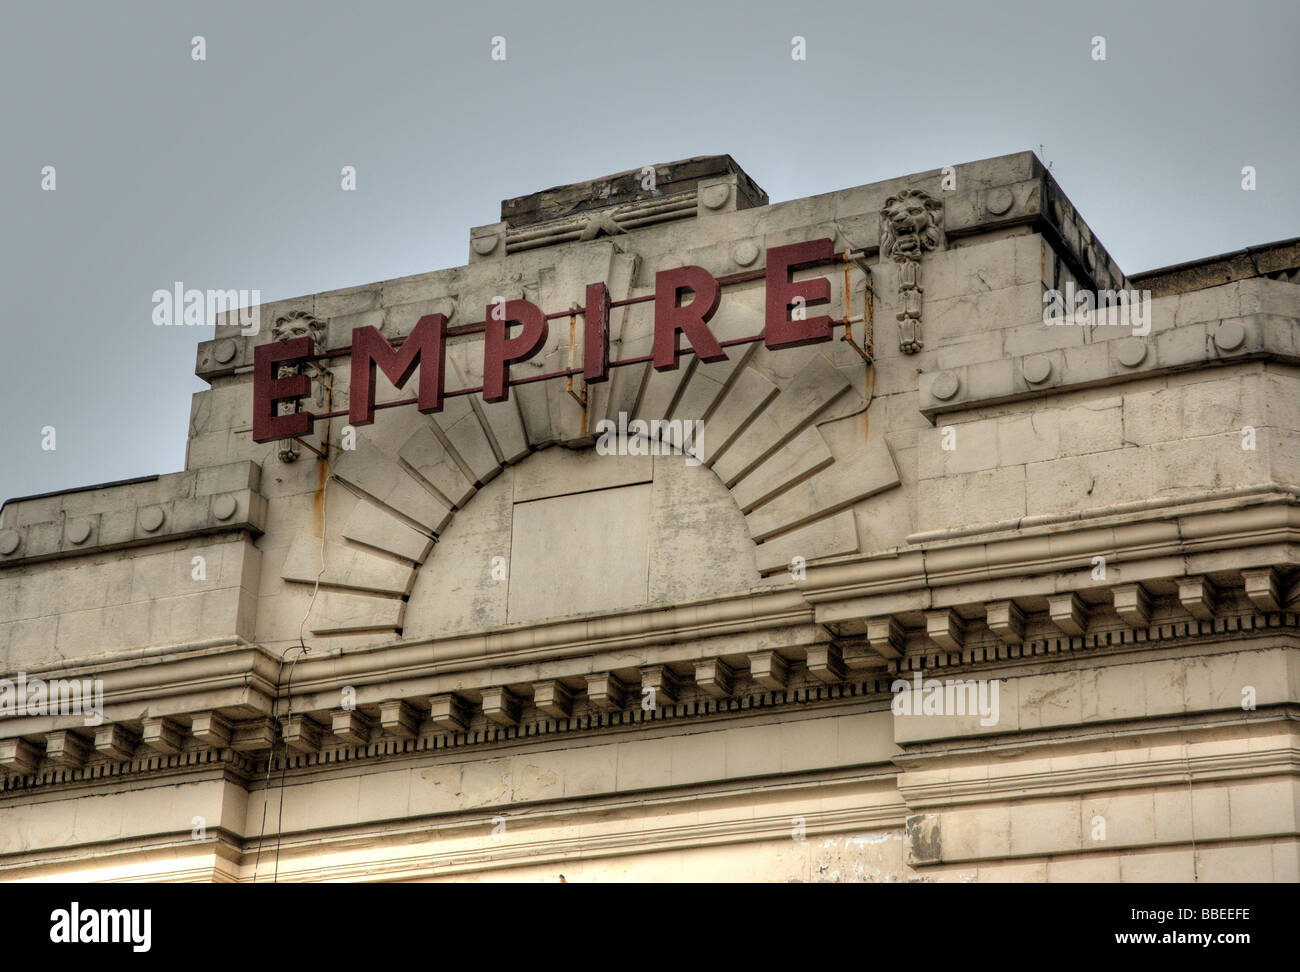 Empire-Schriftzug auf einem alten Kino Gebäude in Huddersfield Stockfoto